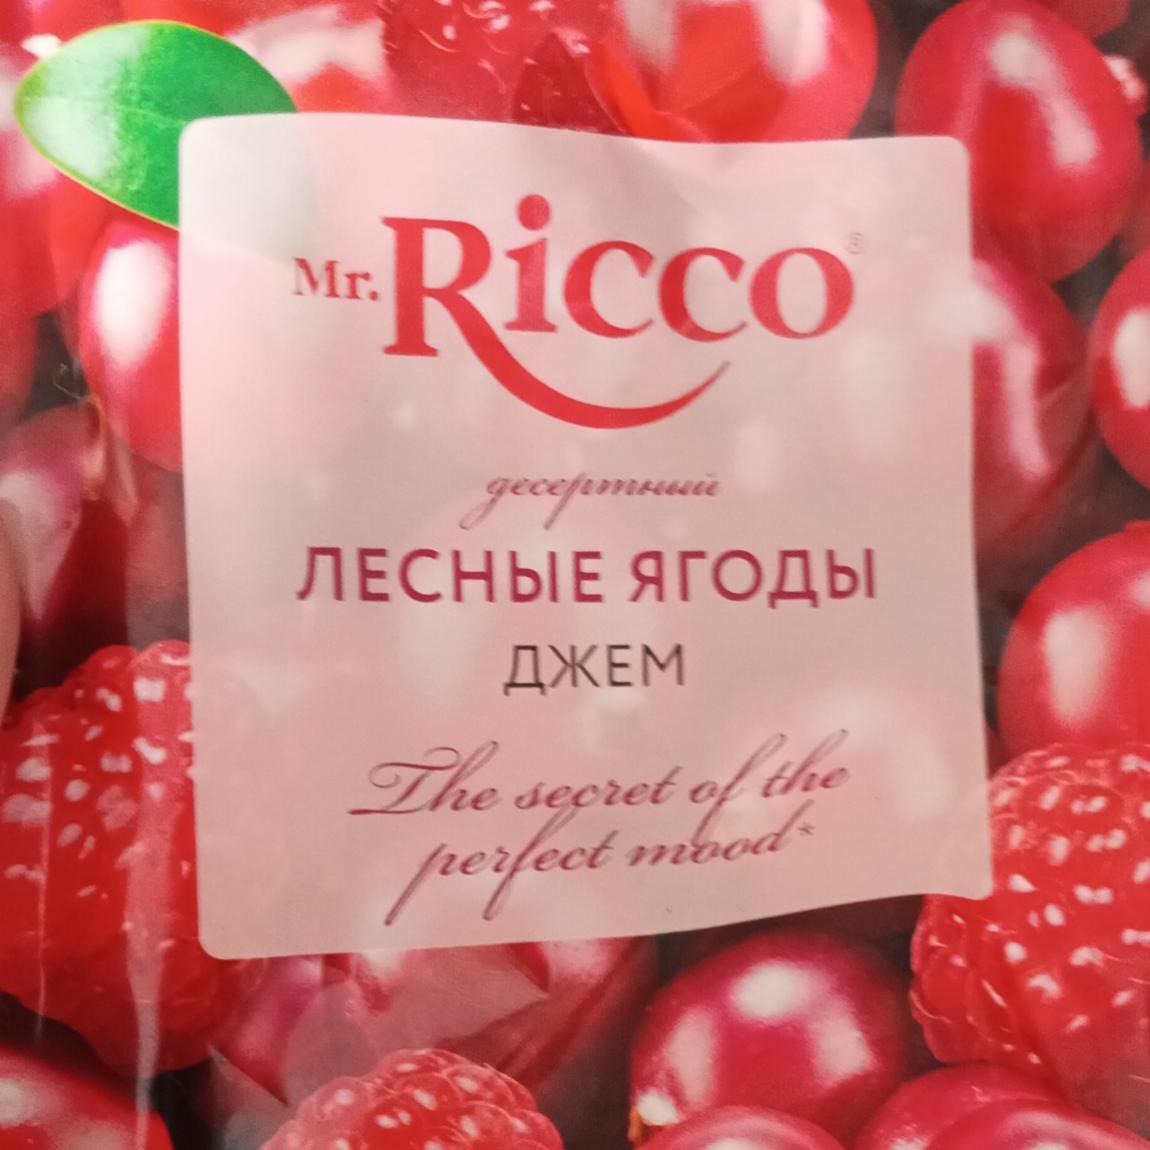 Фото - Джем лесные ягоды Mr.Ricco